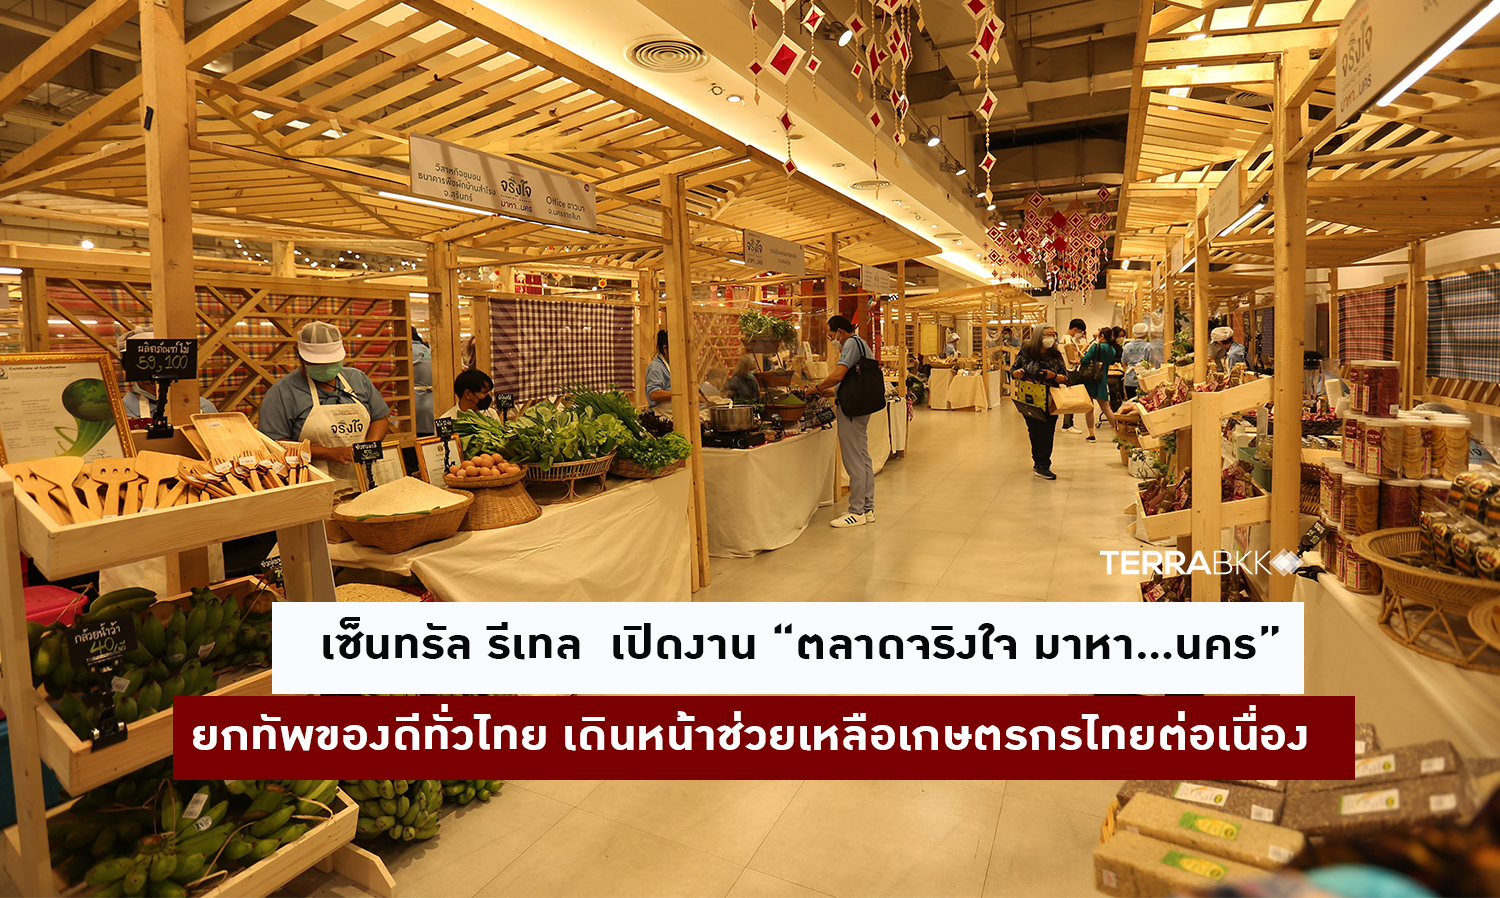 เซ็นทรัล รีเทล  เปิดงาน “ตลาดจริงใจ มาหา…นคร” ครั้งแรกใจกลางกรุงเทพ  ยกทัพของดีทั่วไทย เดินหน้าช่วยเหลือเกษตรกรไทยต่อเนื่อง 